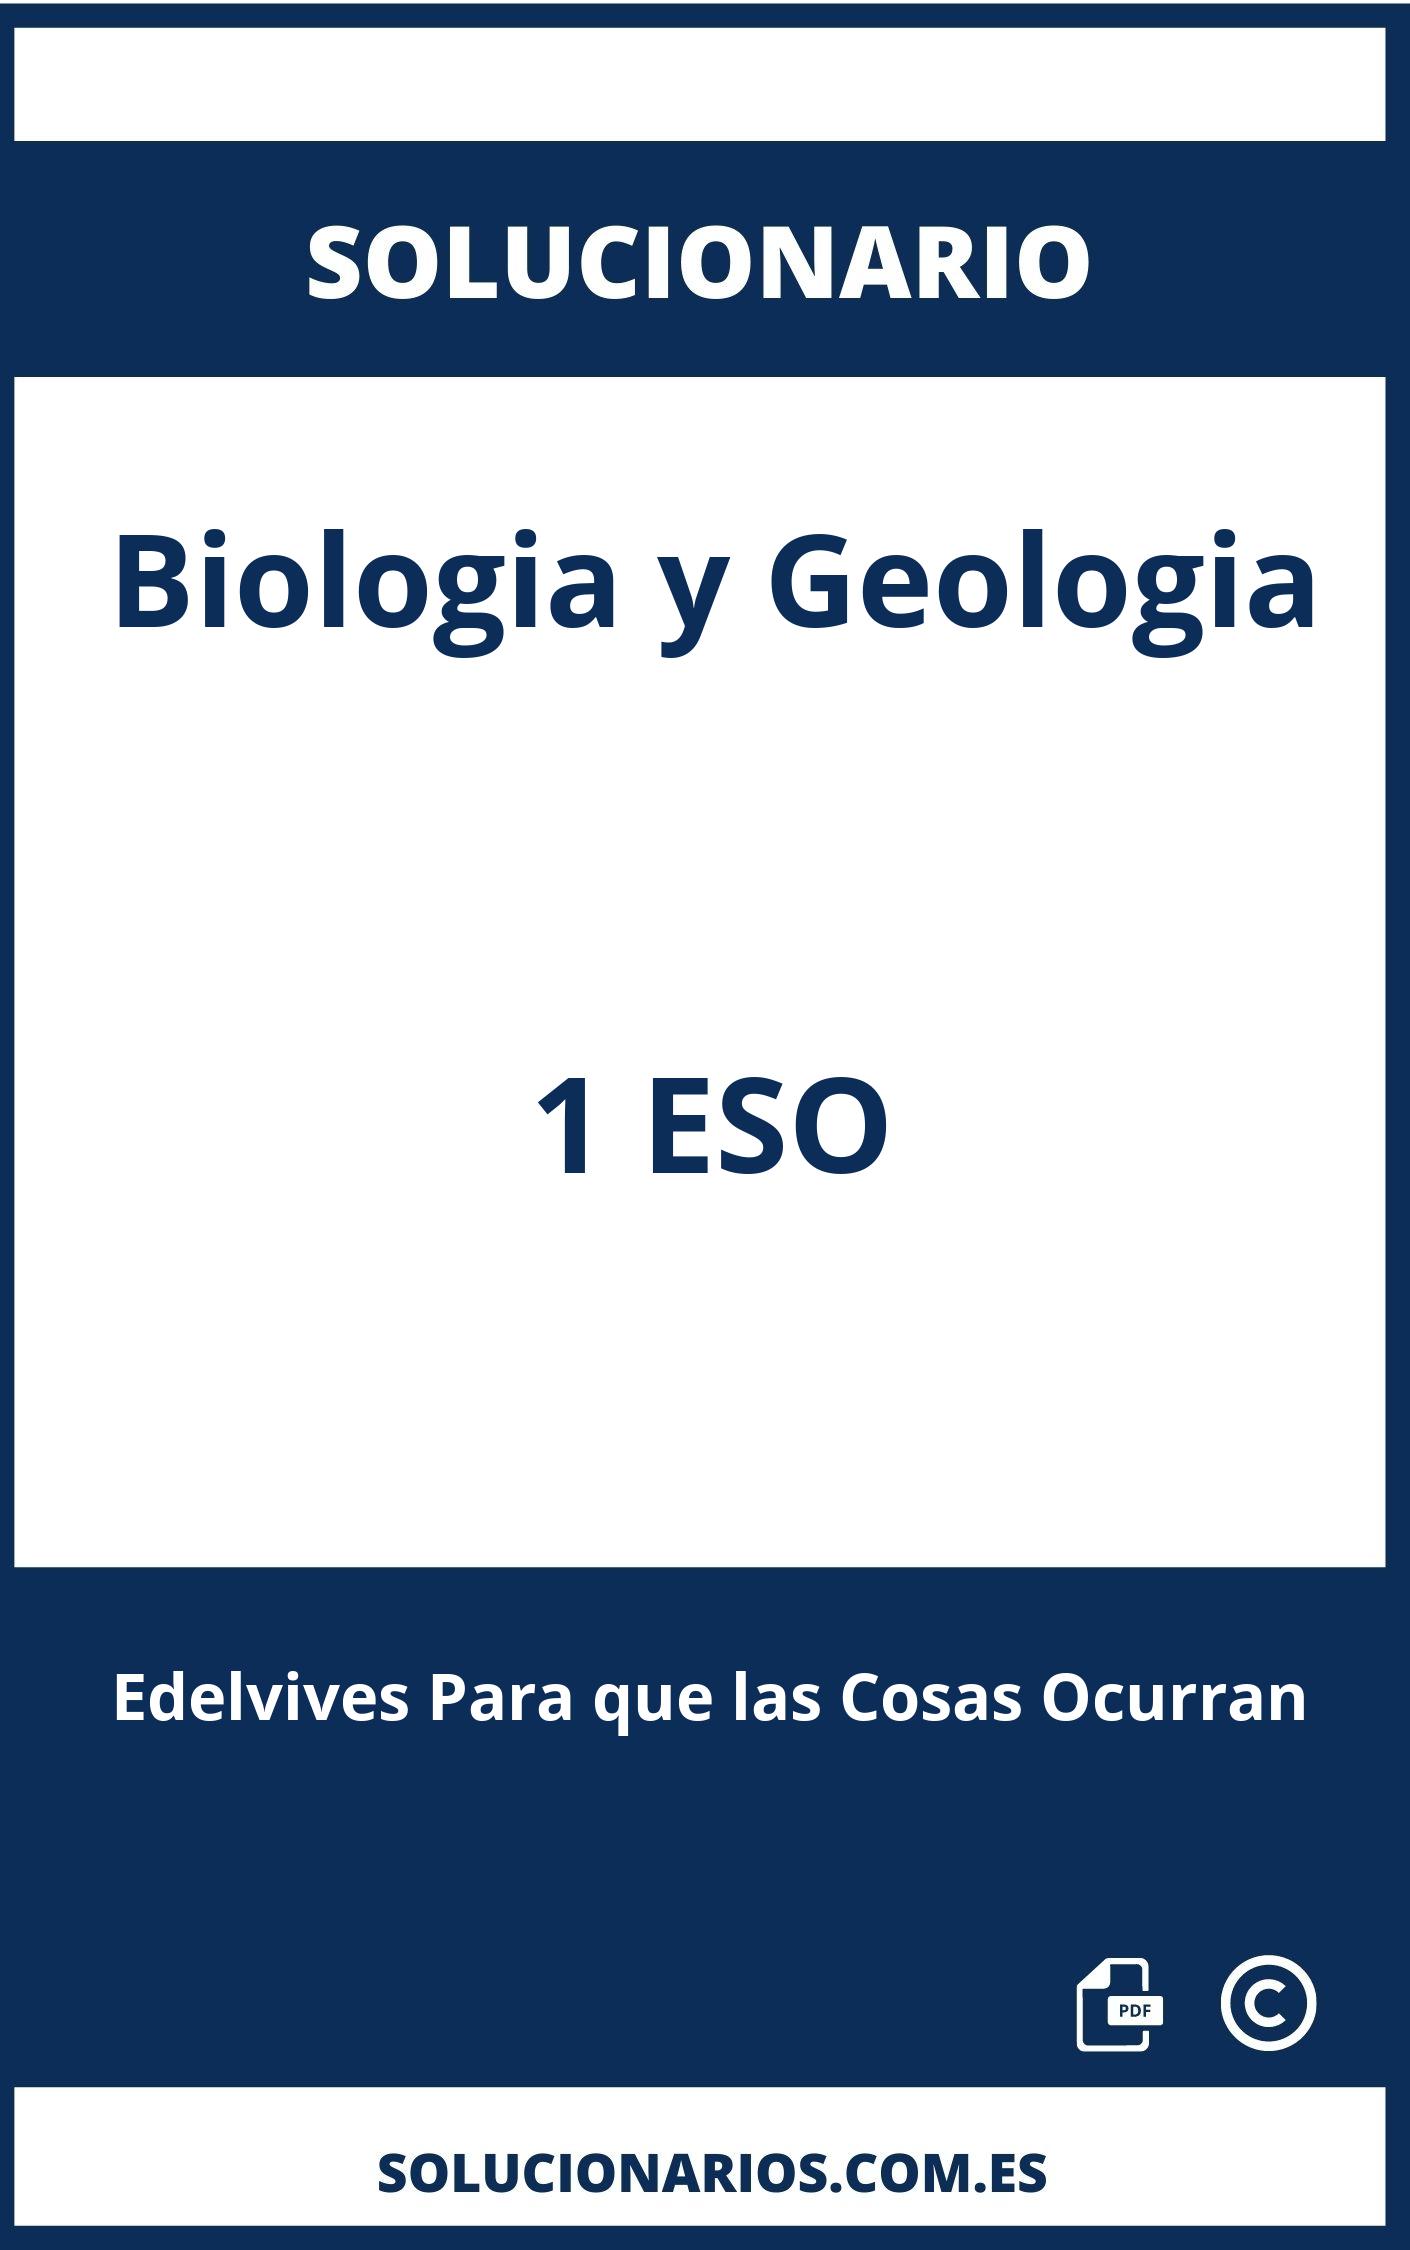 Solucionario Biologia y Geologia 1 ESO Edelvives Para que las Cosas Ocurran